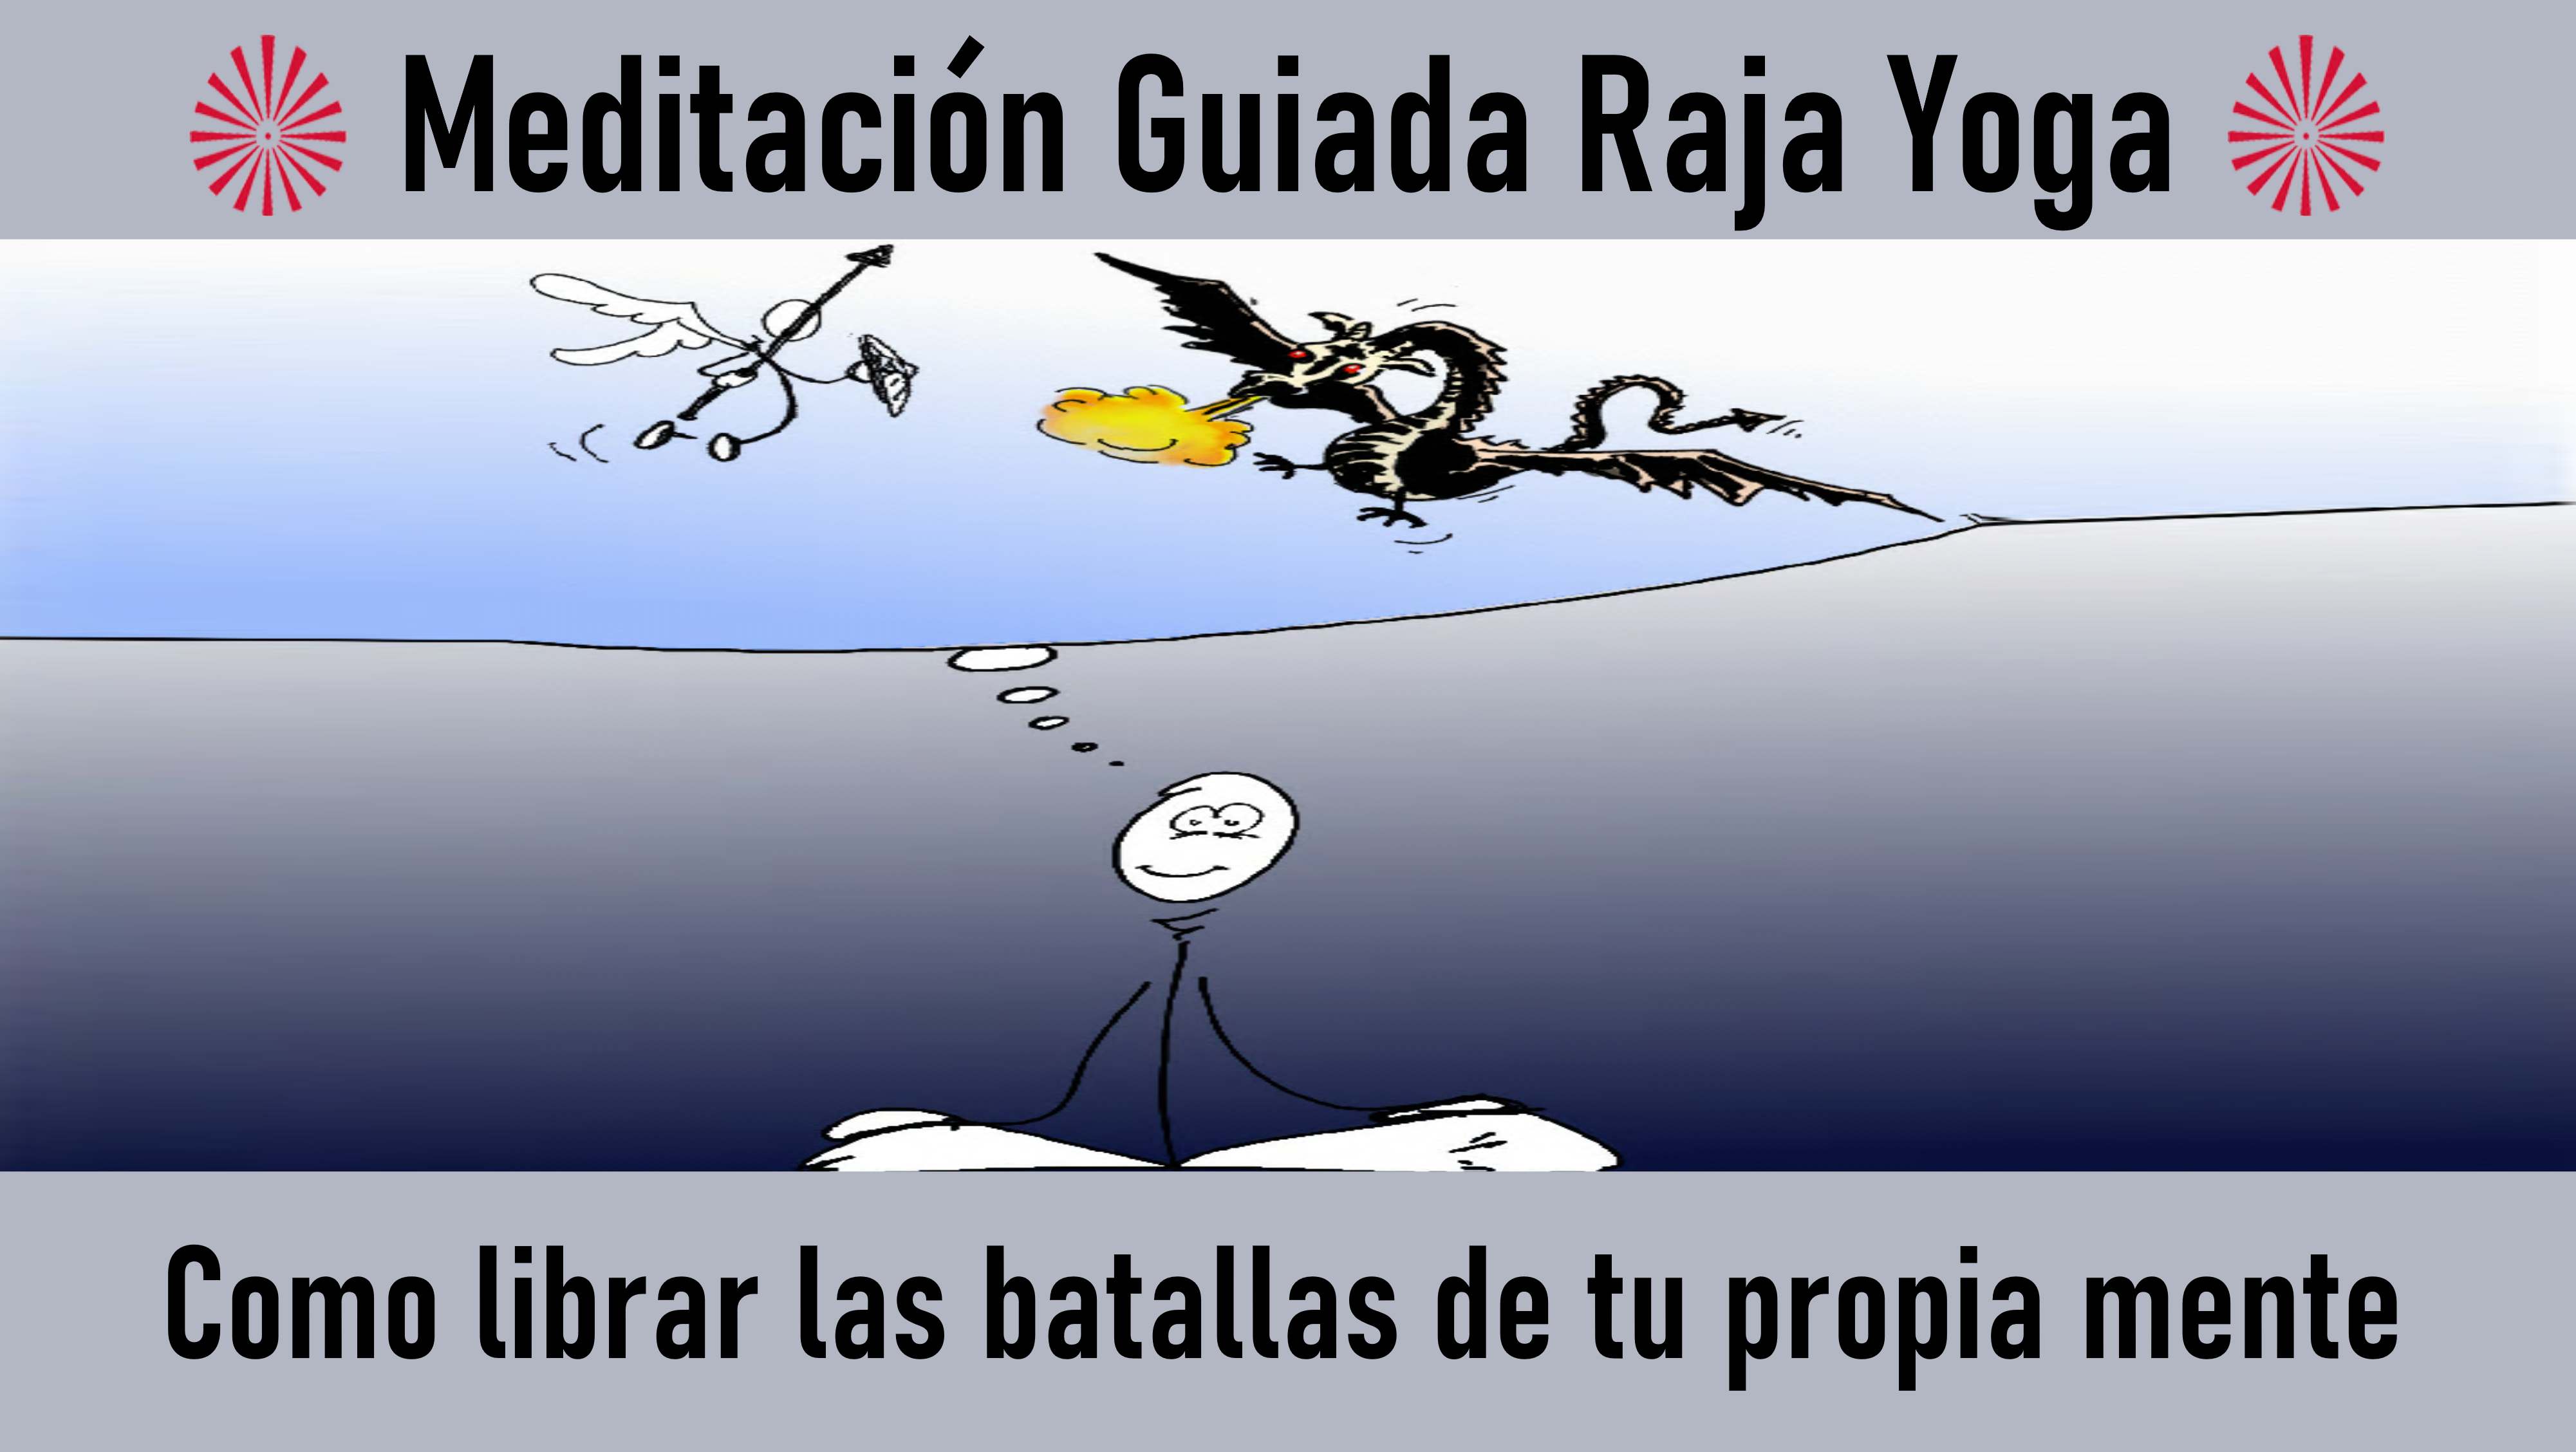 Meditación Raja Yoga: Cómo librar las batallas de nuestra propia mente (18 Agosto 2020) On-line desde Canarias